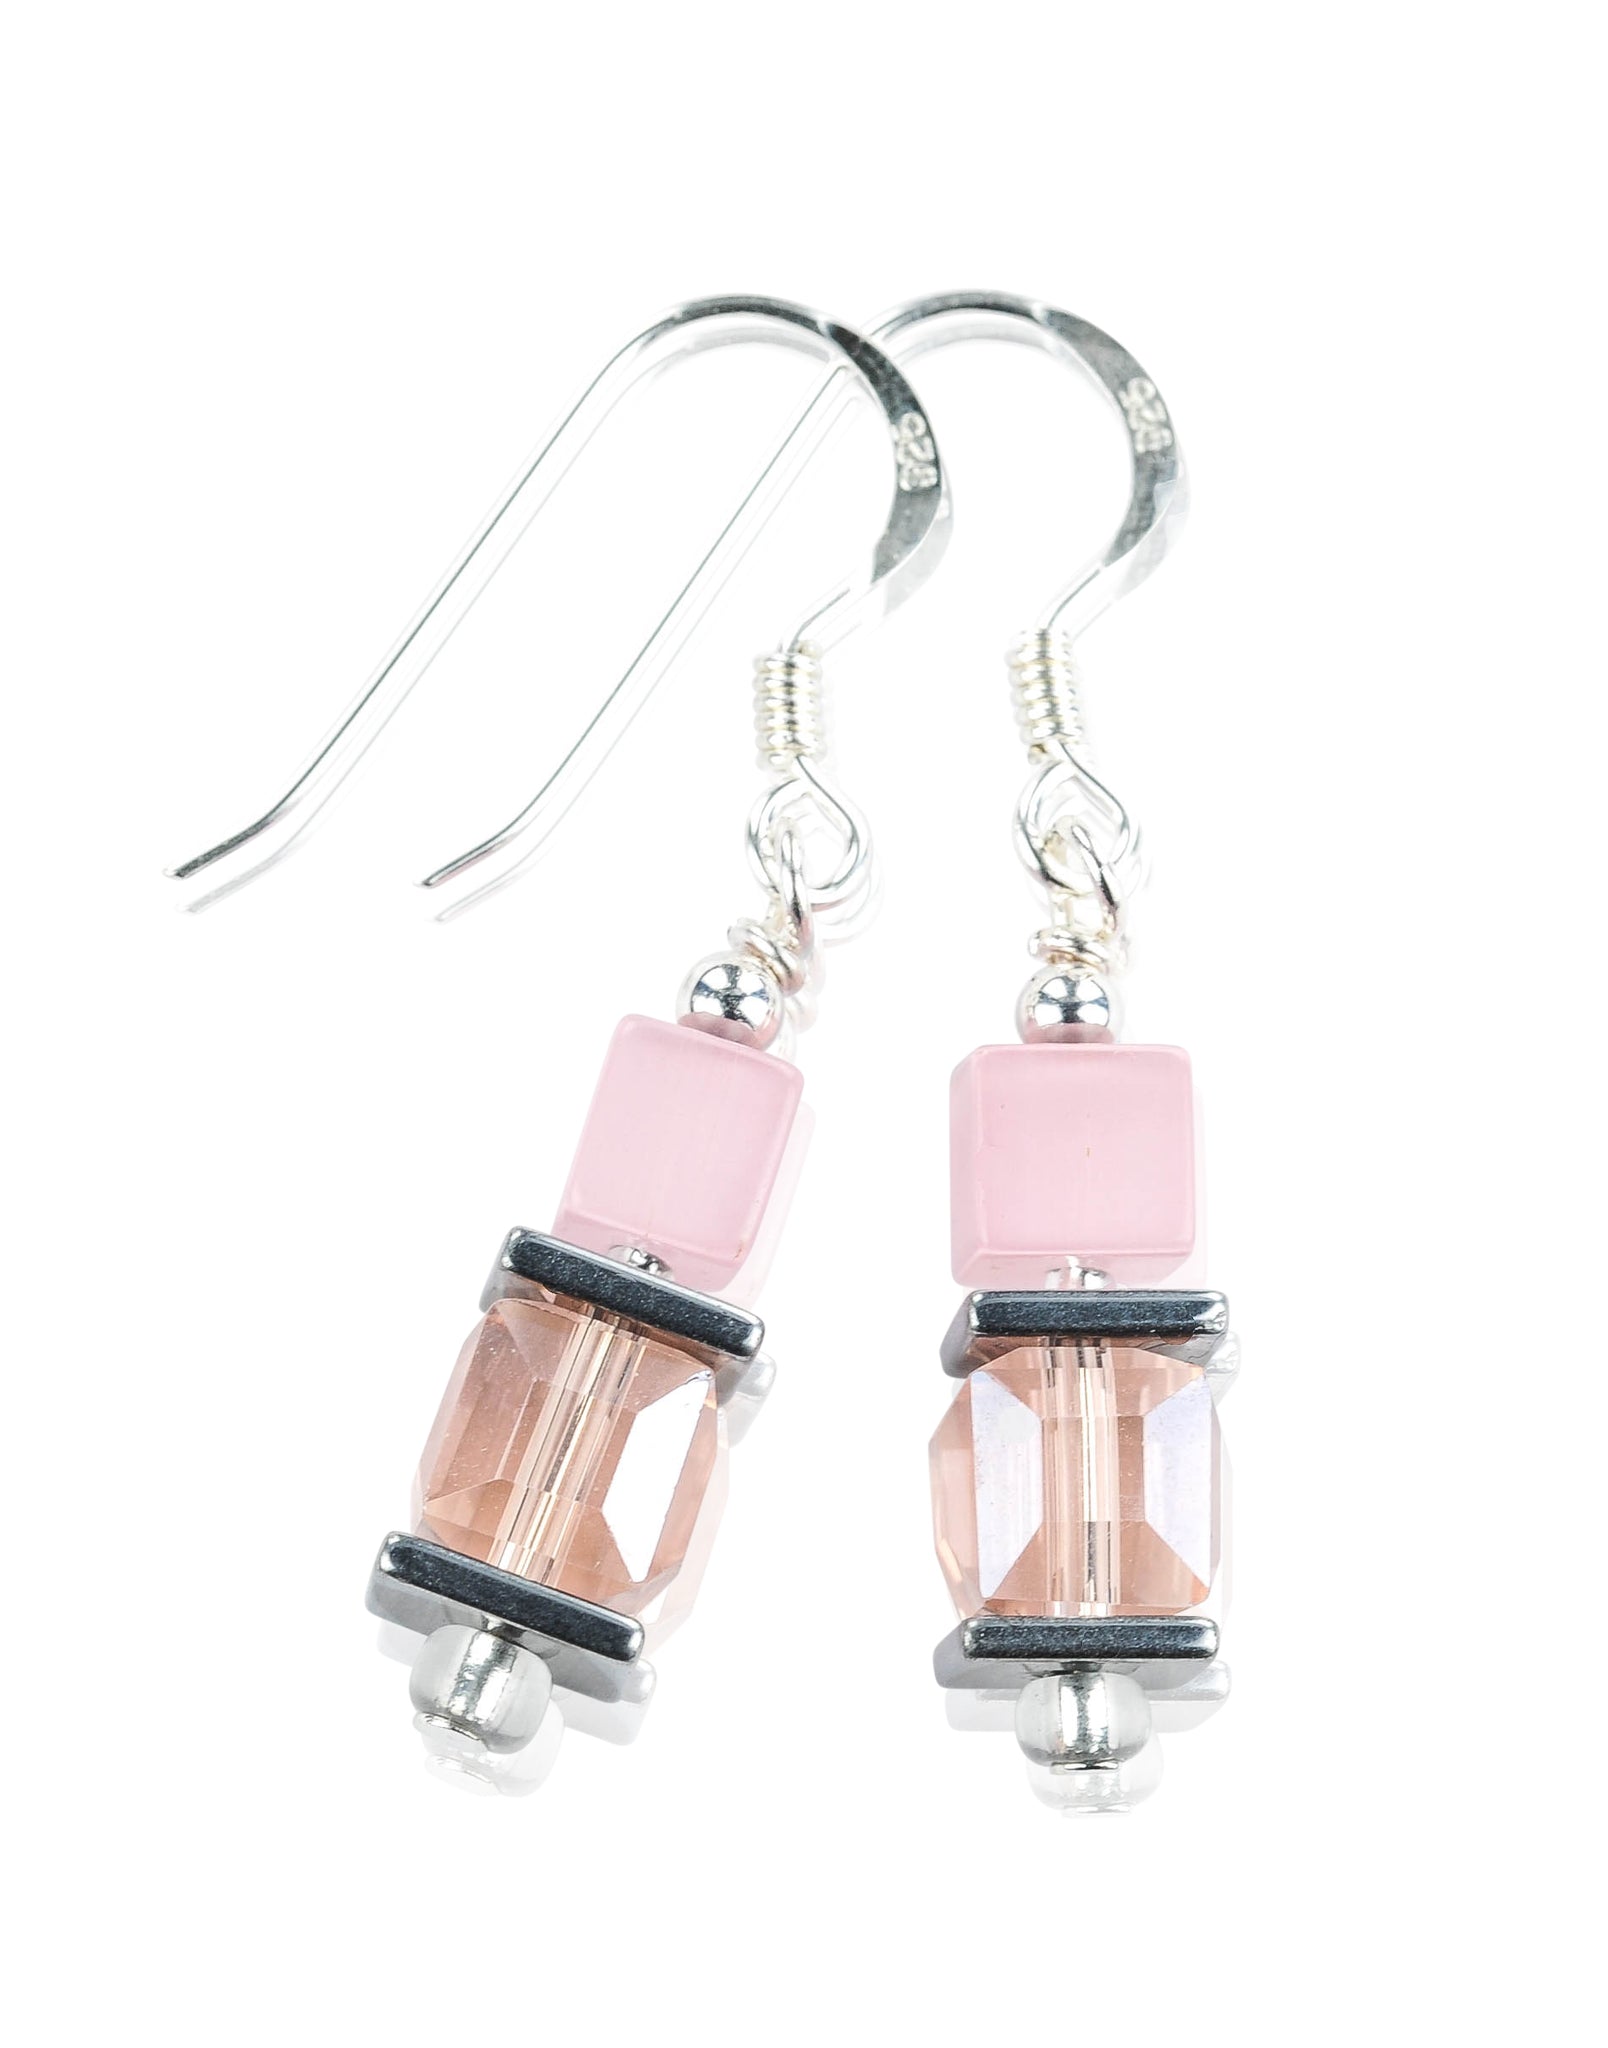 FL07: Pink cats eye earrings